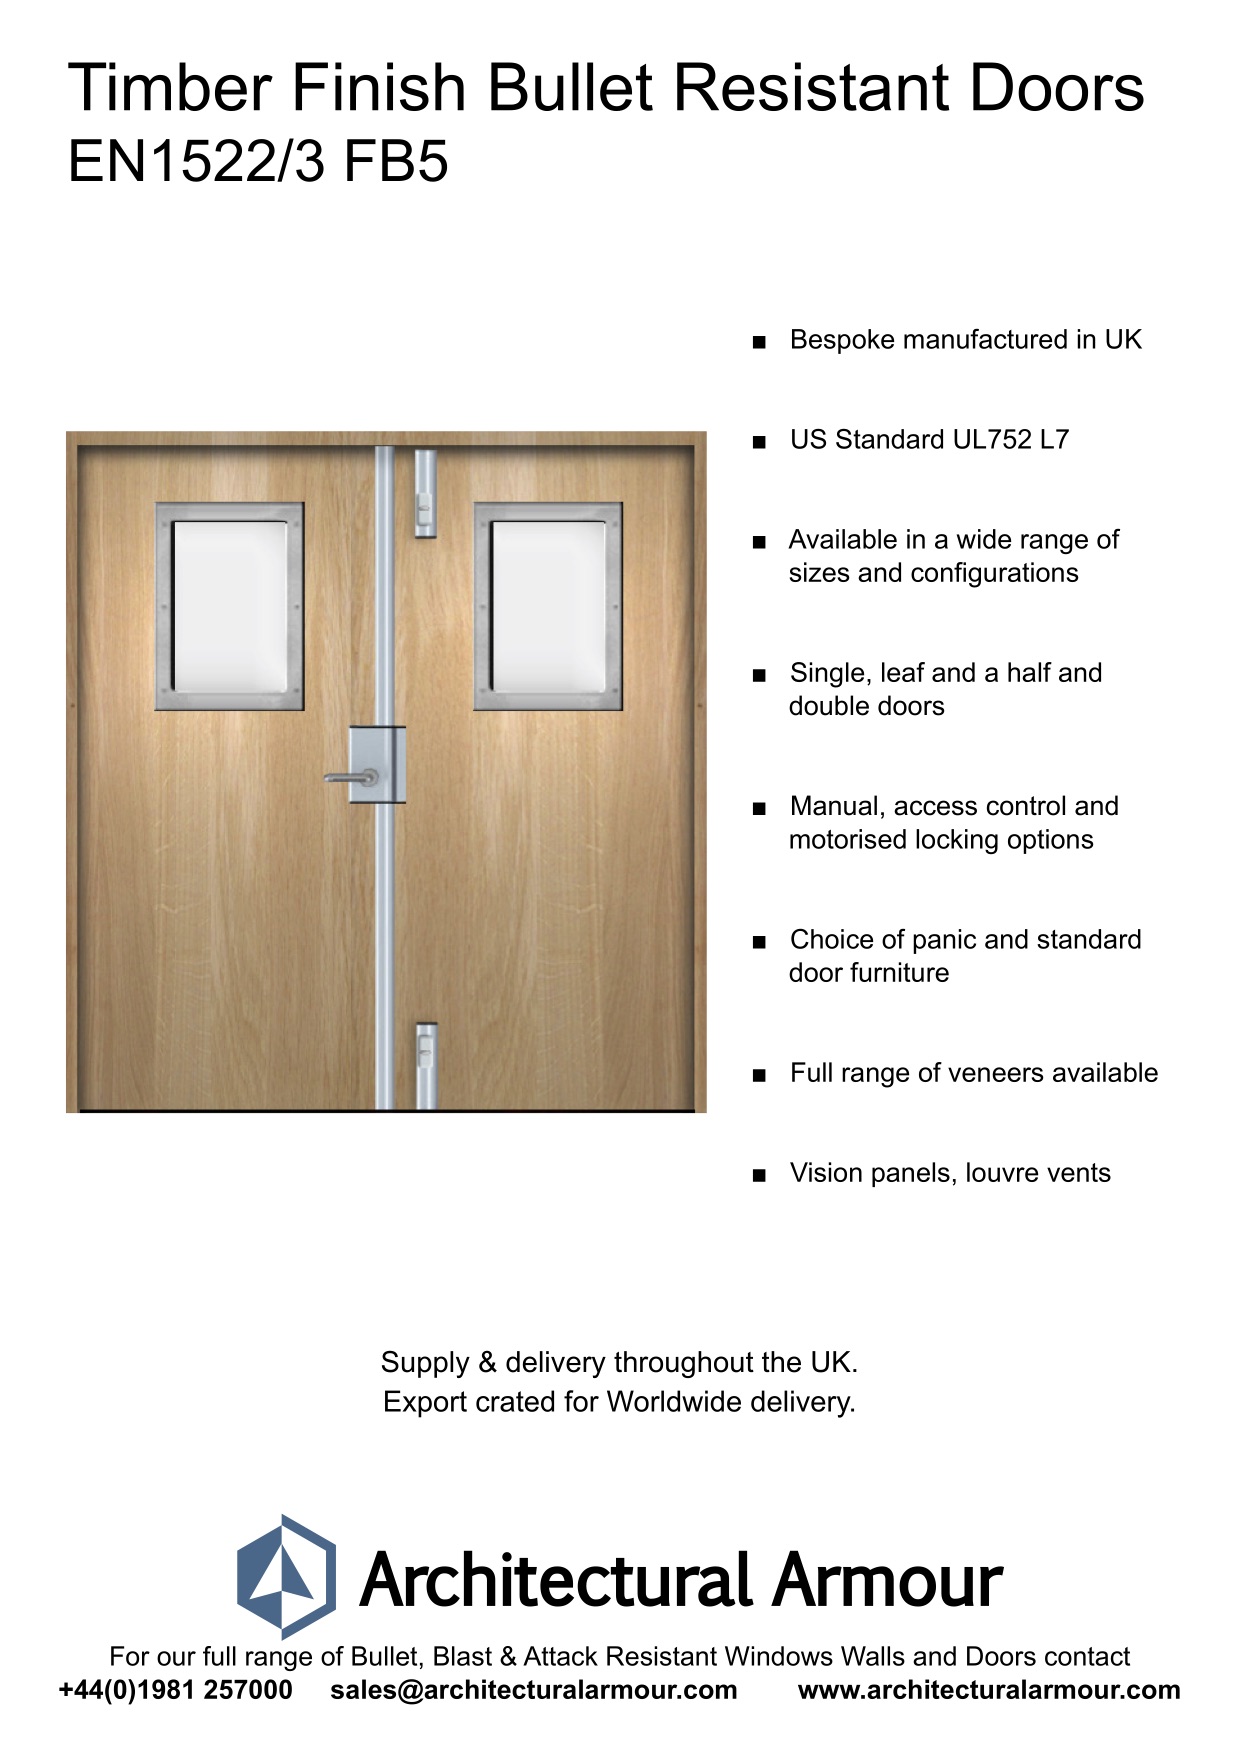 EN1522-3-FB5-Bulletproof-Doors-Vision-Panels